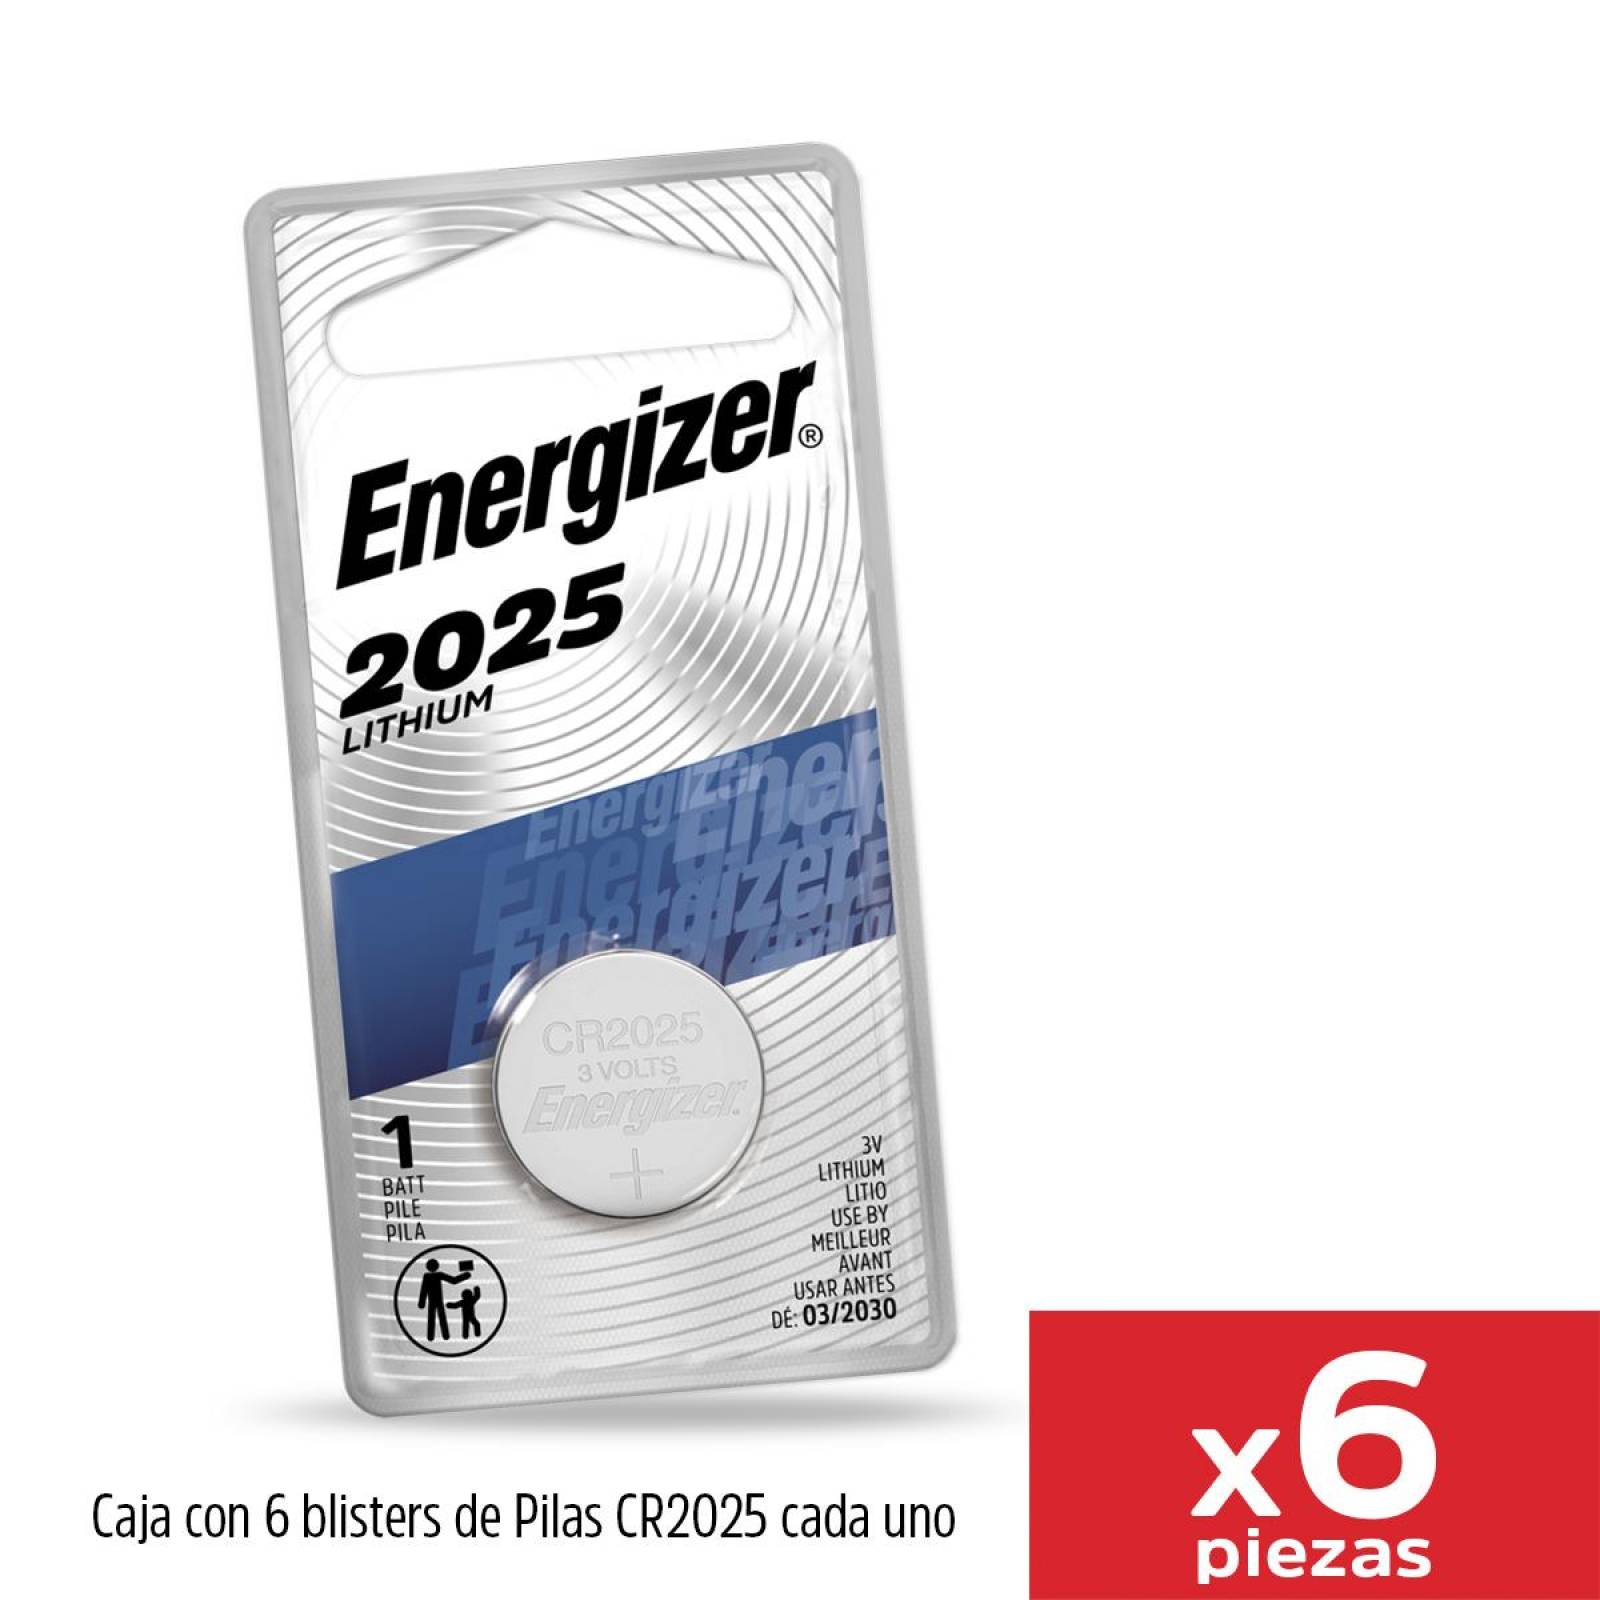 Pack 2 Und Pila de Litio Energizer Mini Botón 2025 - 950571